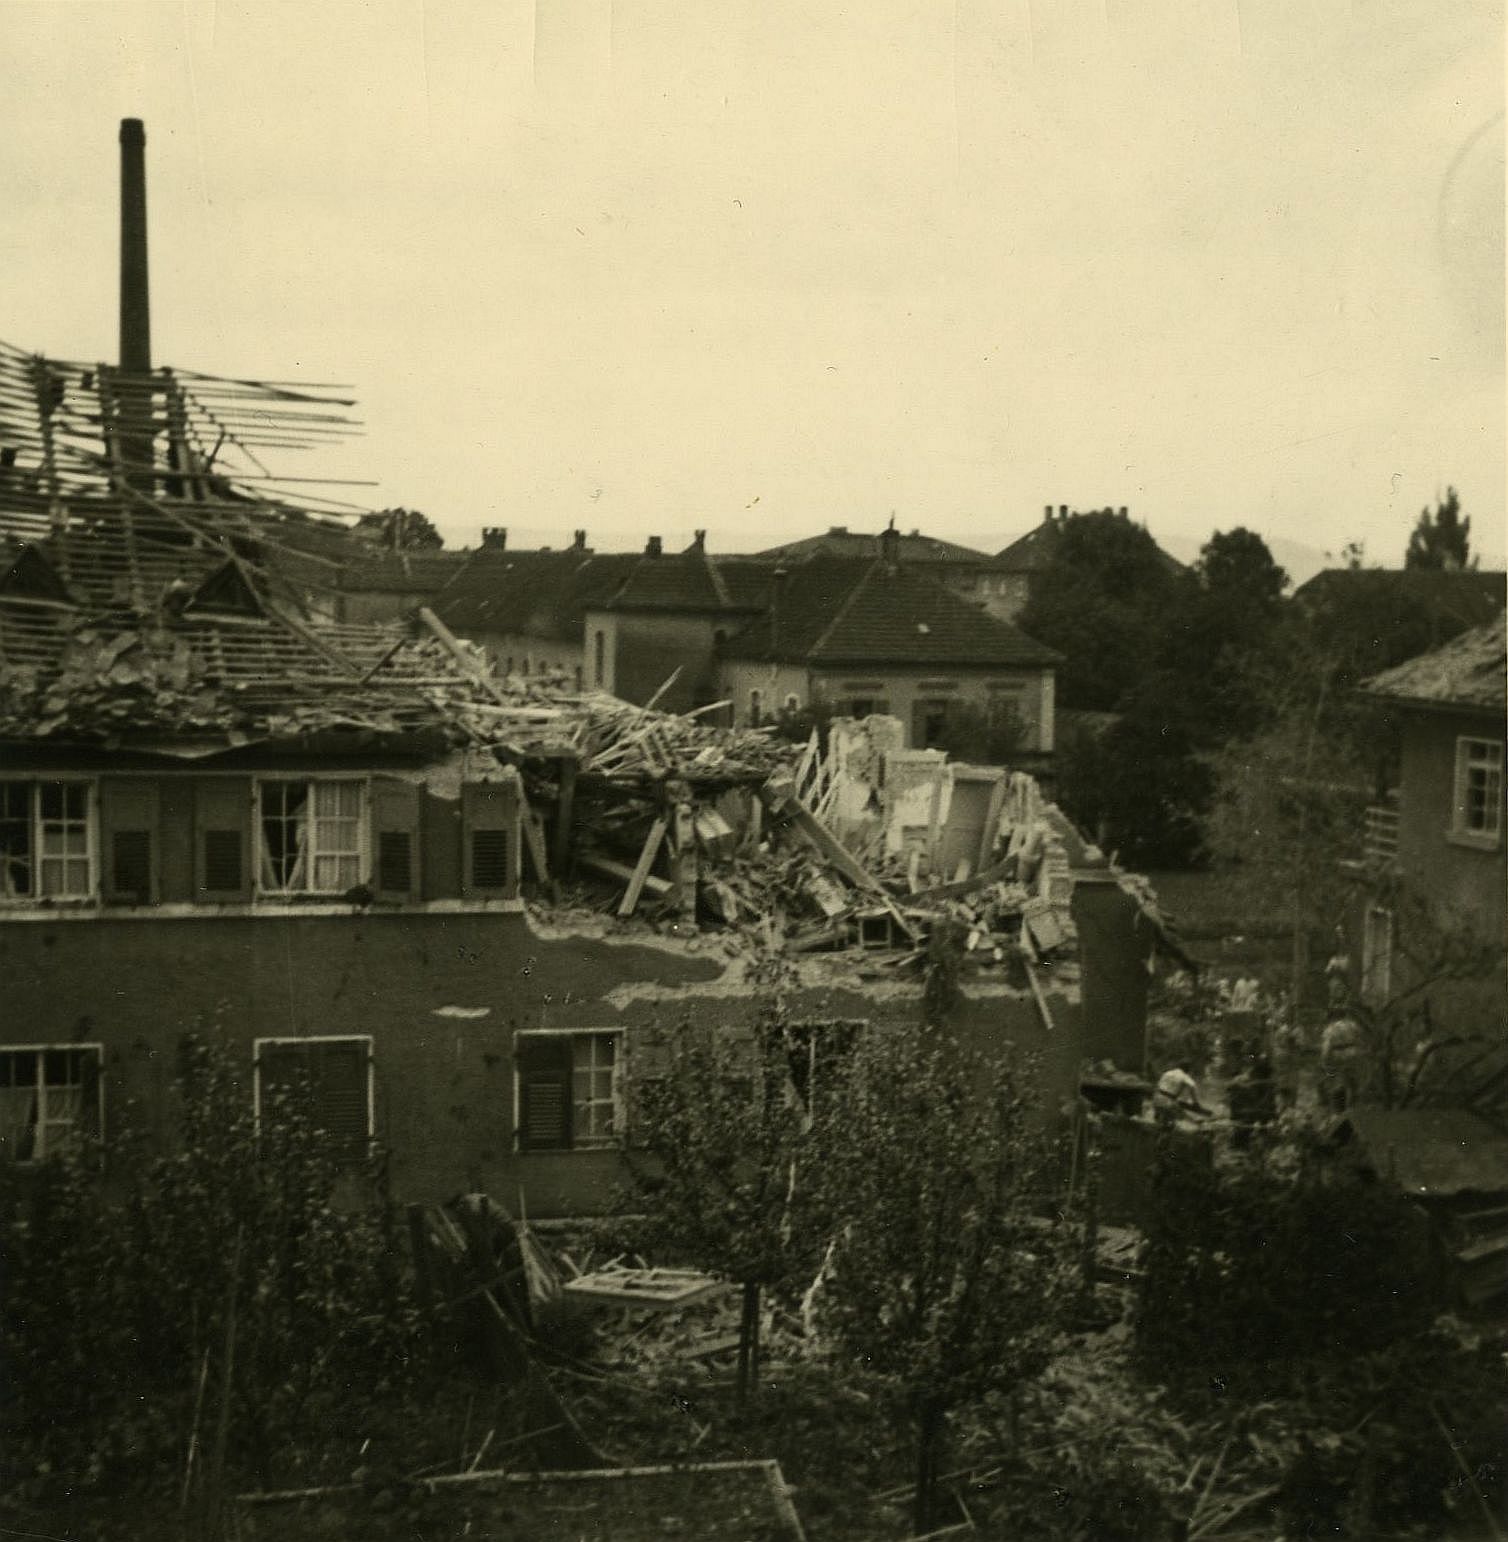 Im Tiefflug überfliegt der Halunke die Stadt“ – Feuerwehrmann Fritz Pflüger  beschreibt zwei Tage später den Fliegerangriff mit Spreng- und Brandbomben  auf die Stadt vom 12. Oktober 1941